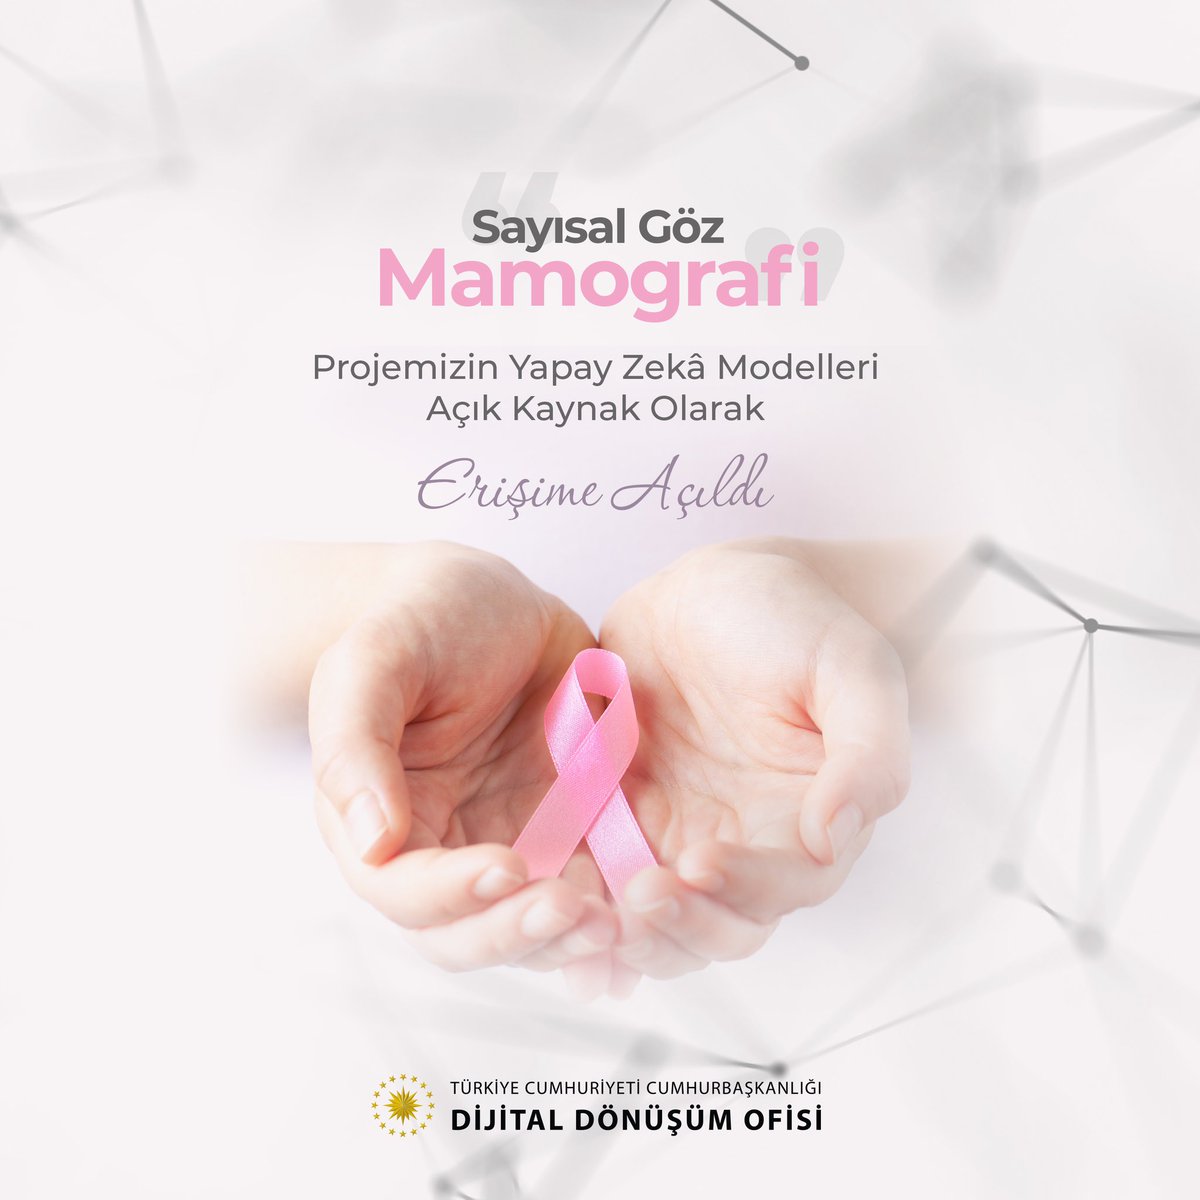 Tüm kadınlarımızın 8 Mart #DünyaKadınlarGünü'nü tebrik ederiz. Tüm dünyada her yıl yüz binlerce kadını etkileyen meme kanserini erken tanıya yardımcı olmak için yürüttüğümüz mamografi görüntülerinden kitle tespiti yapan “Sayısal Göz-Mamografi” projemizin #YapayZeka modellerini, 8